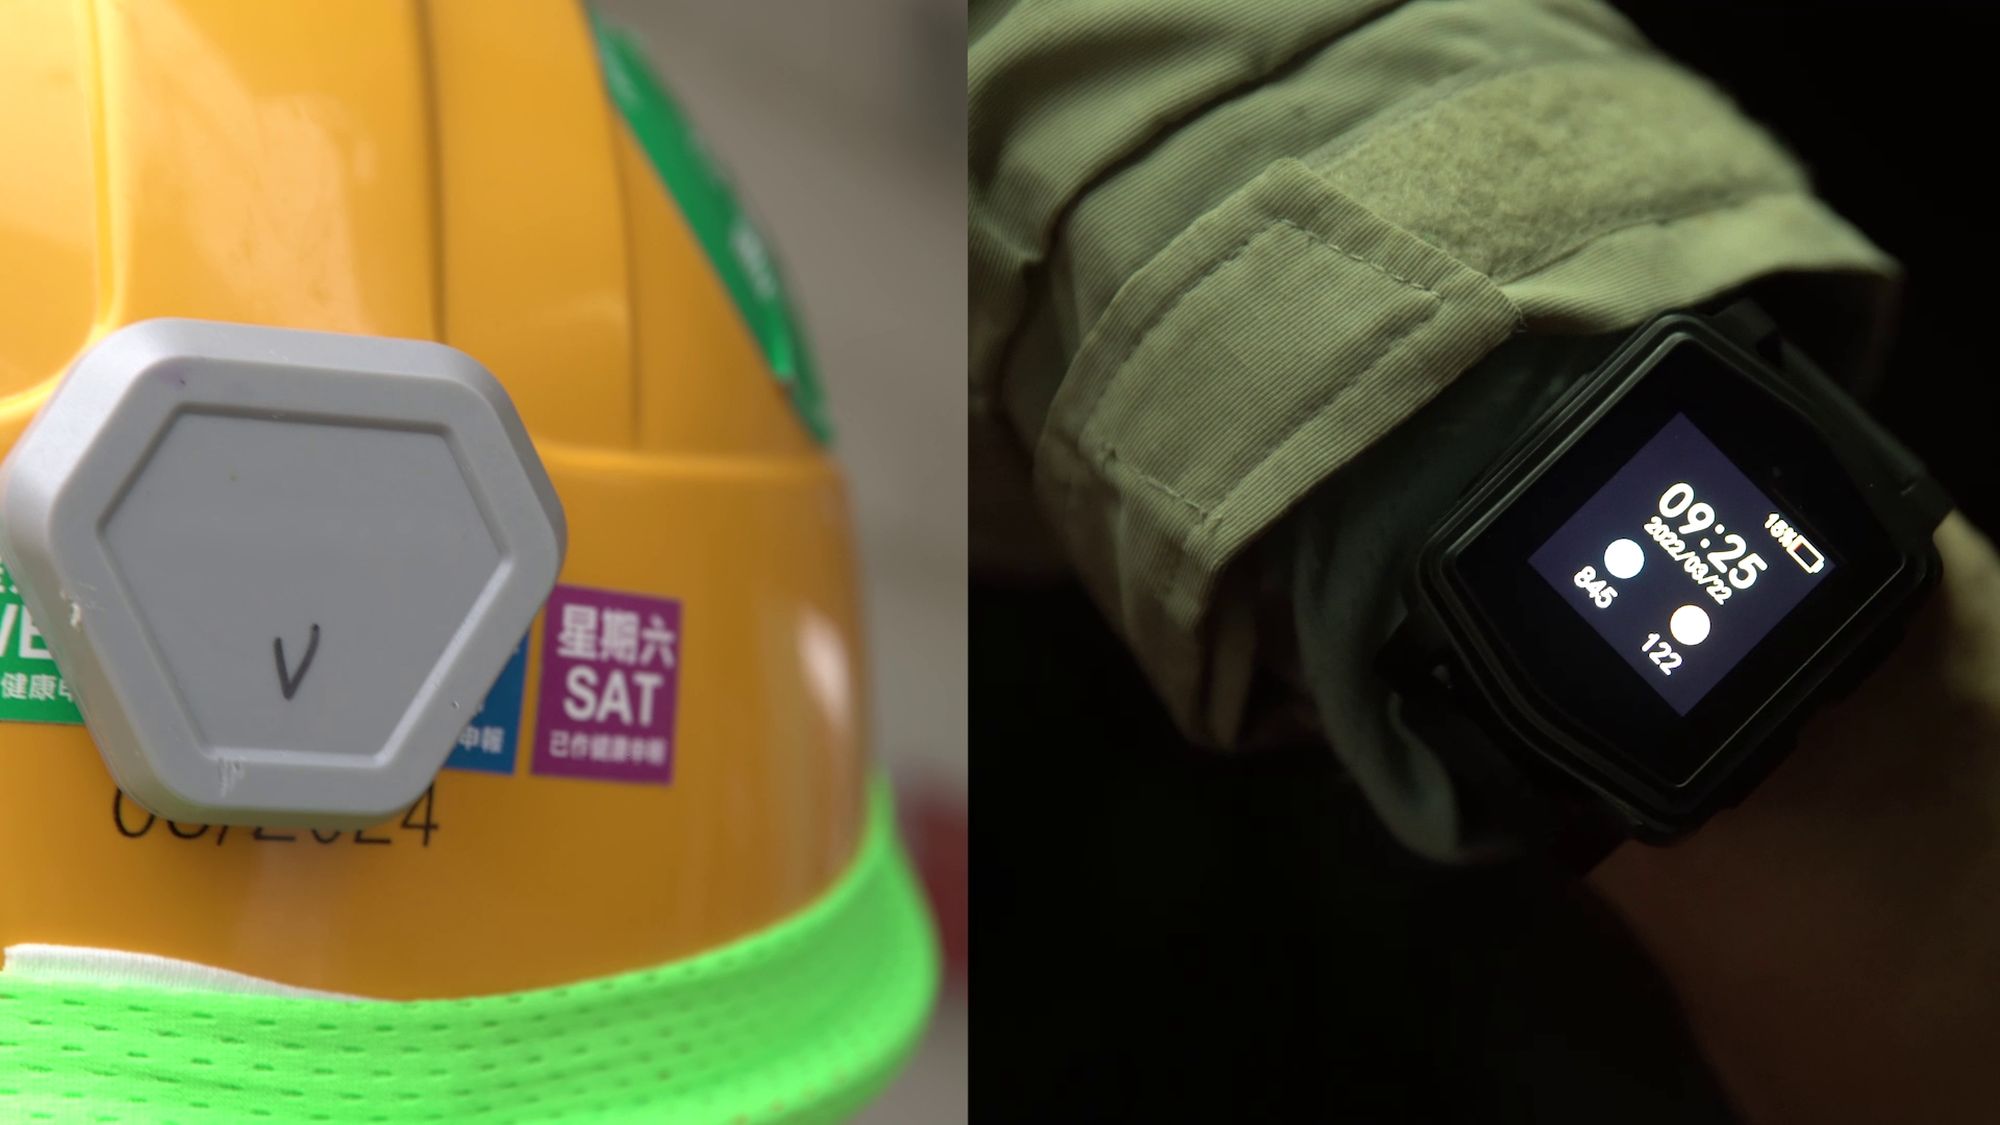 智能安全帽和智能手錶能適時發出提醒訊號予安全管理人員和工友，協助監察工友的工作安全。